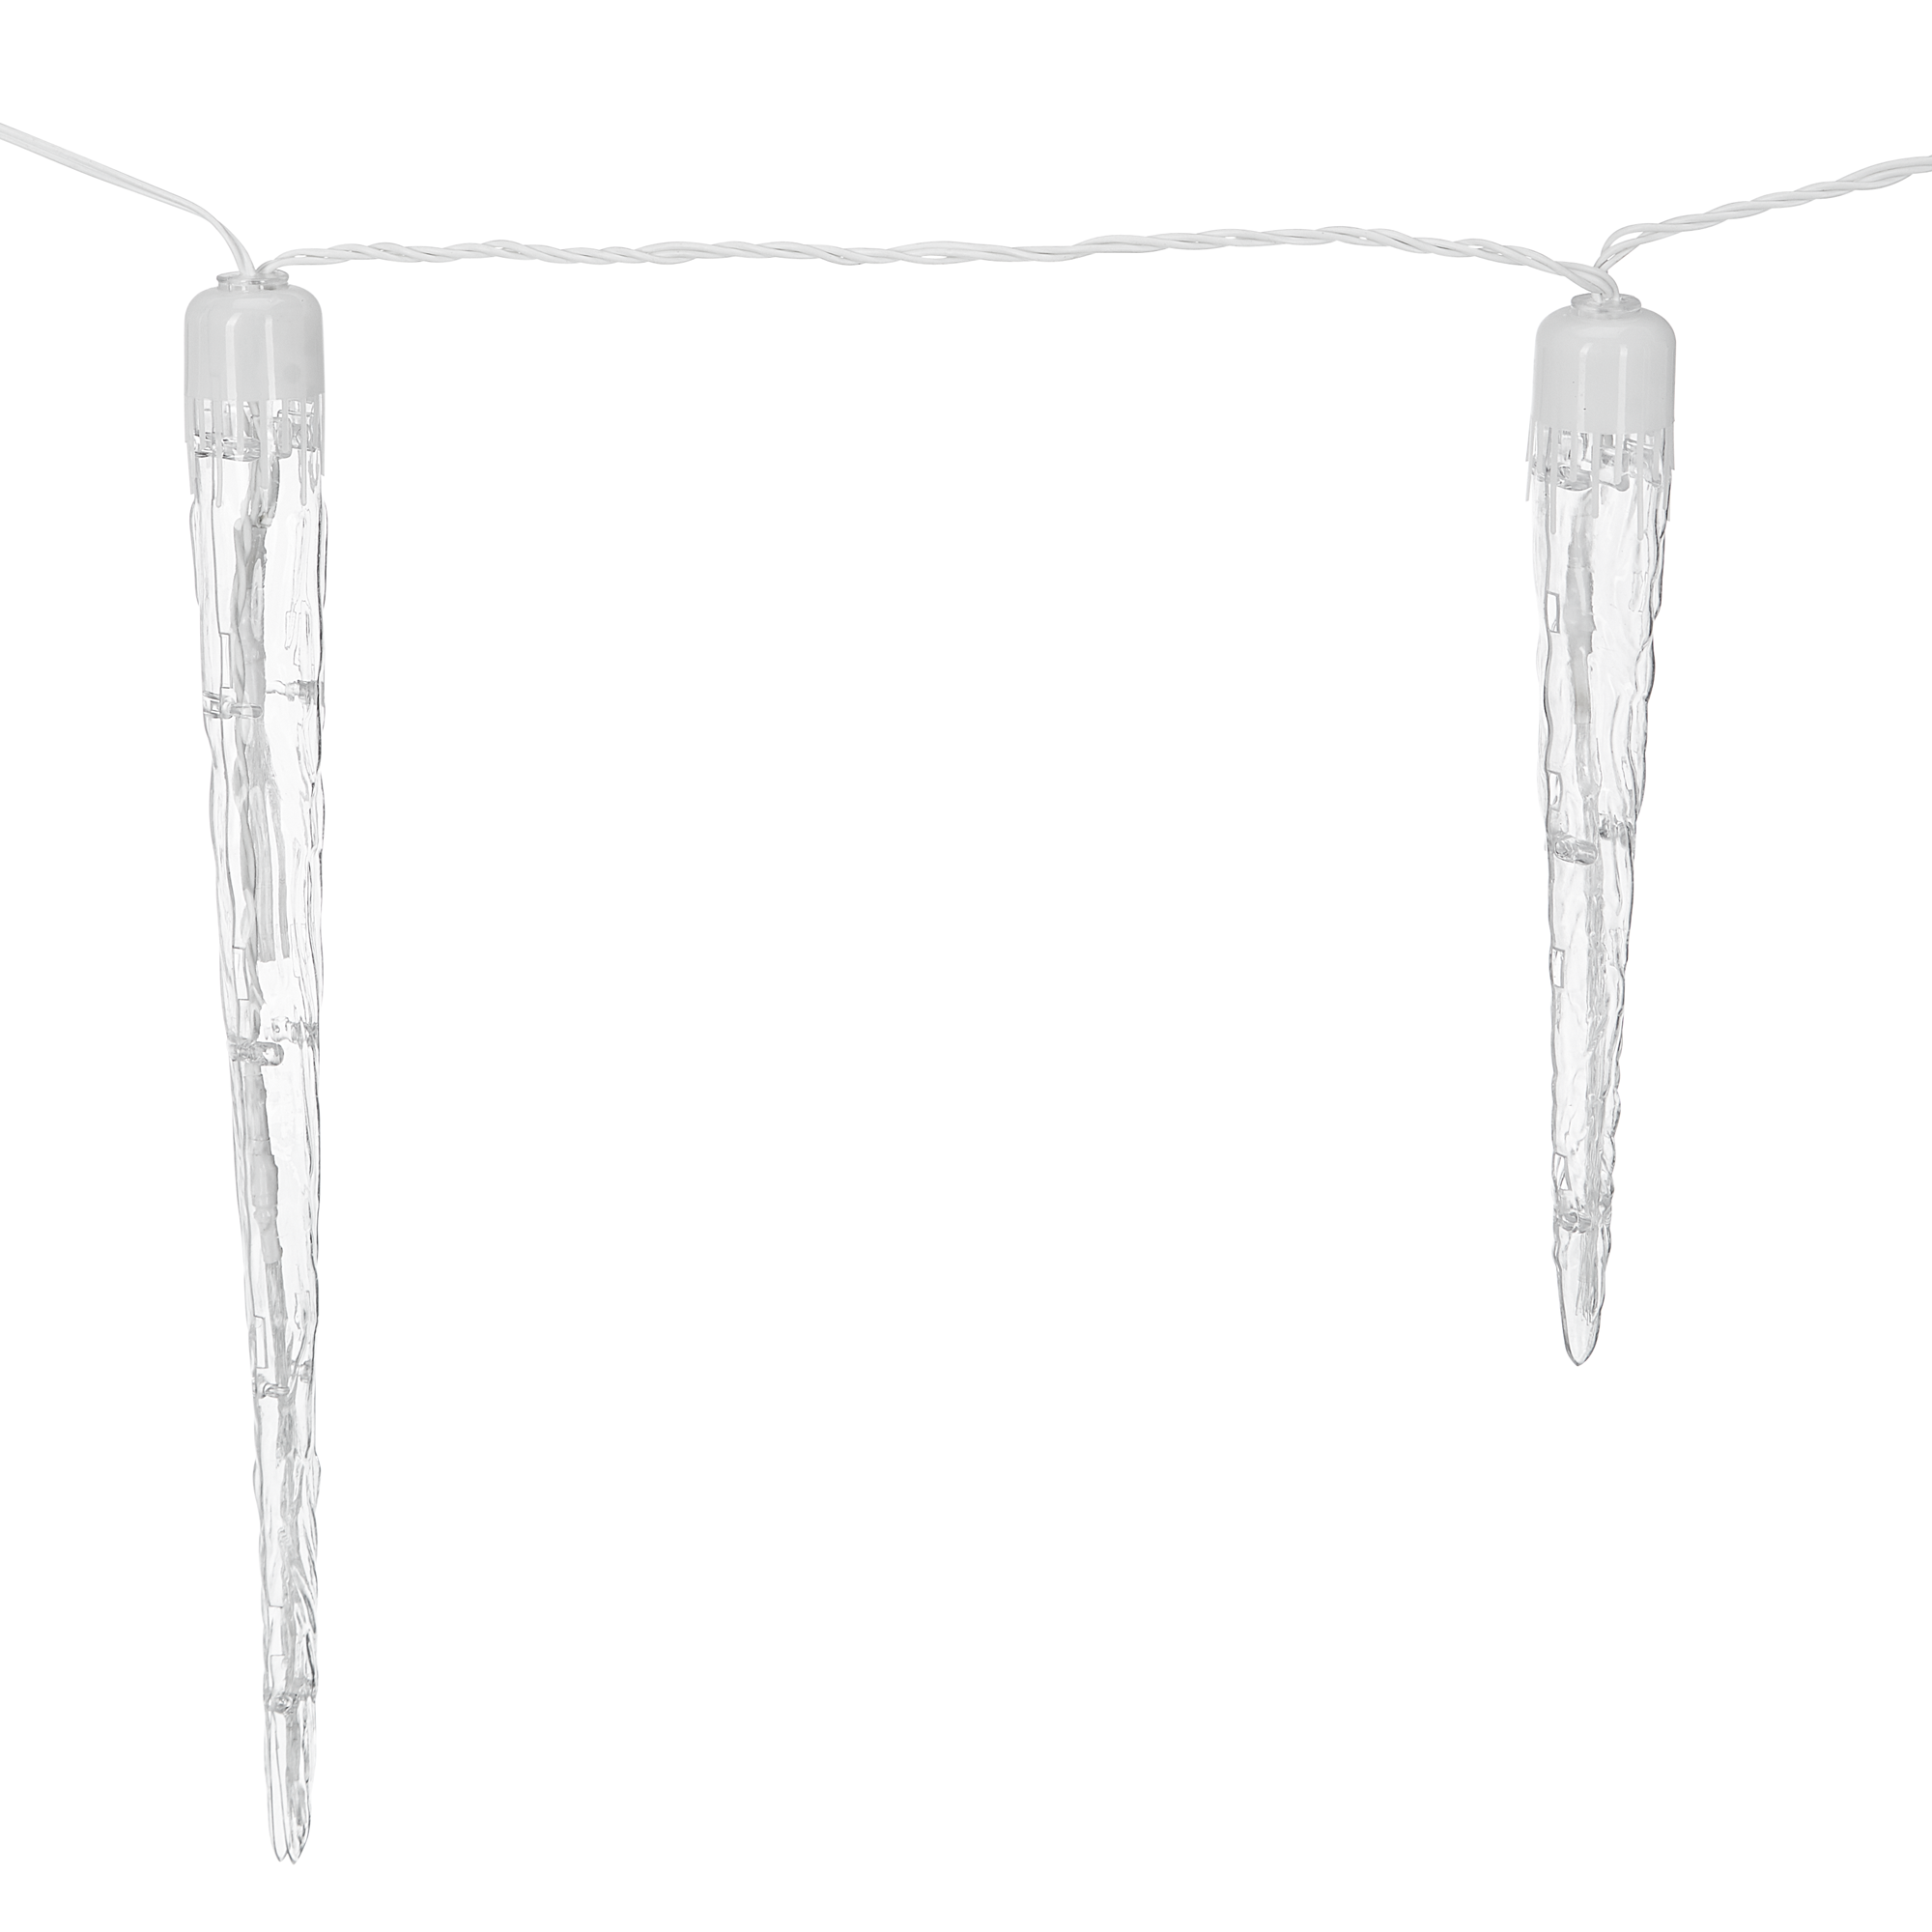 LED-Eiszapfenkette transparent 24 LEDs 144 W 1375 m + product picture